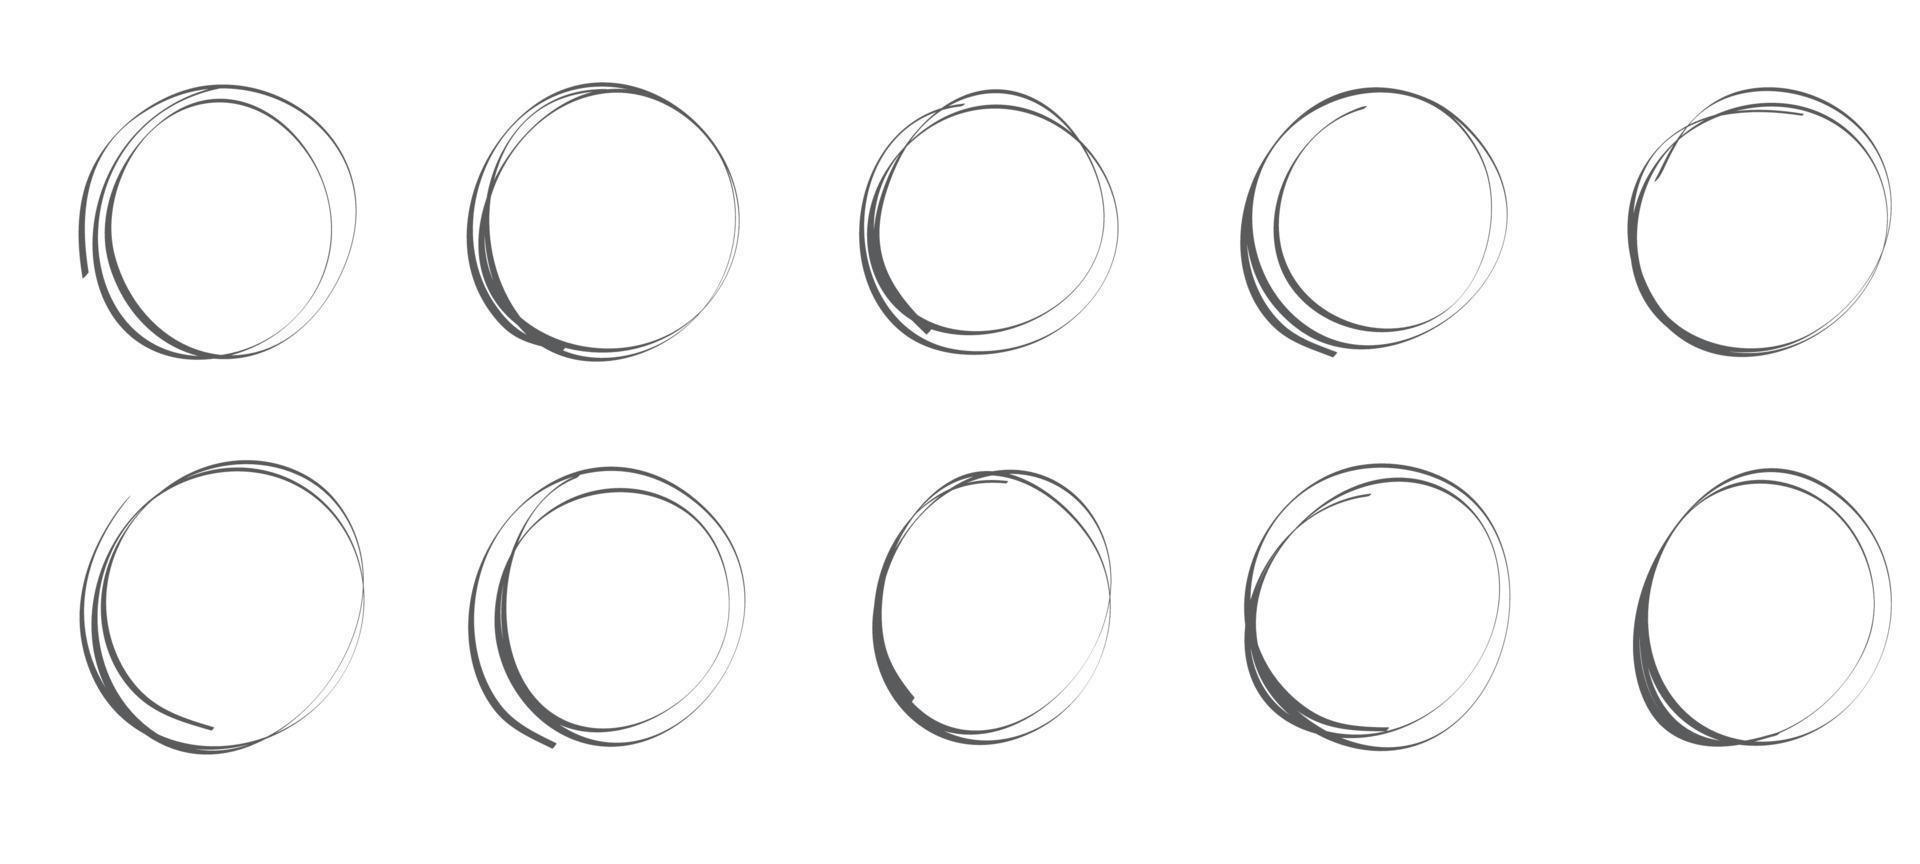 reeks van hand- getrokken cirkels schetsen kader, viltstift pen ovalen. tekening circulaire kader elementen geïsoleerd vector illustratie